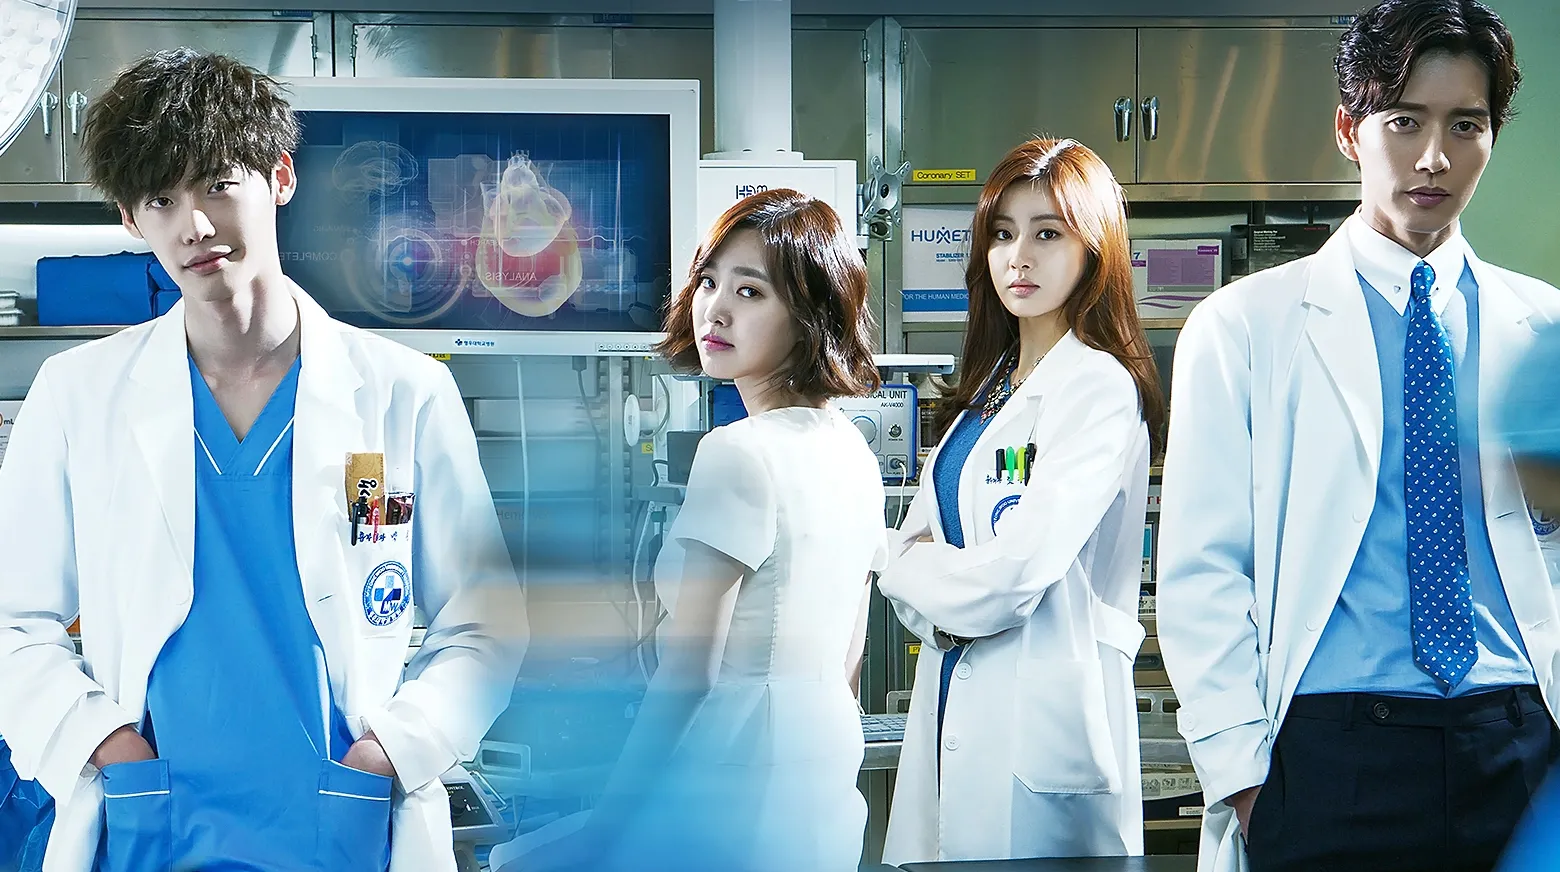 سریال پزشکی کره ای ۲۰۲۱ / سریال های پزشکی کره ای جدید